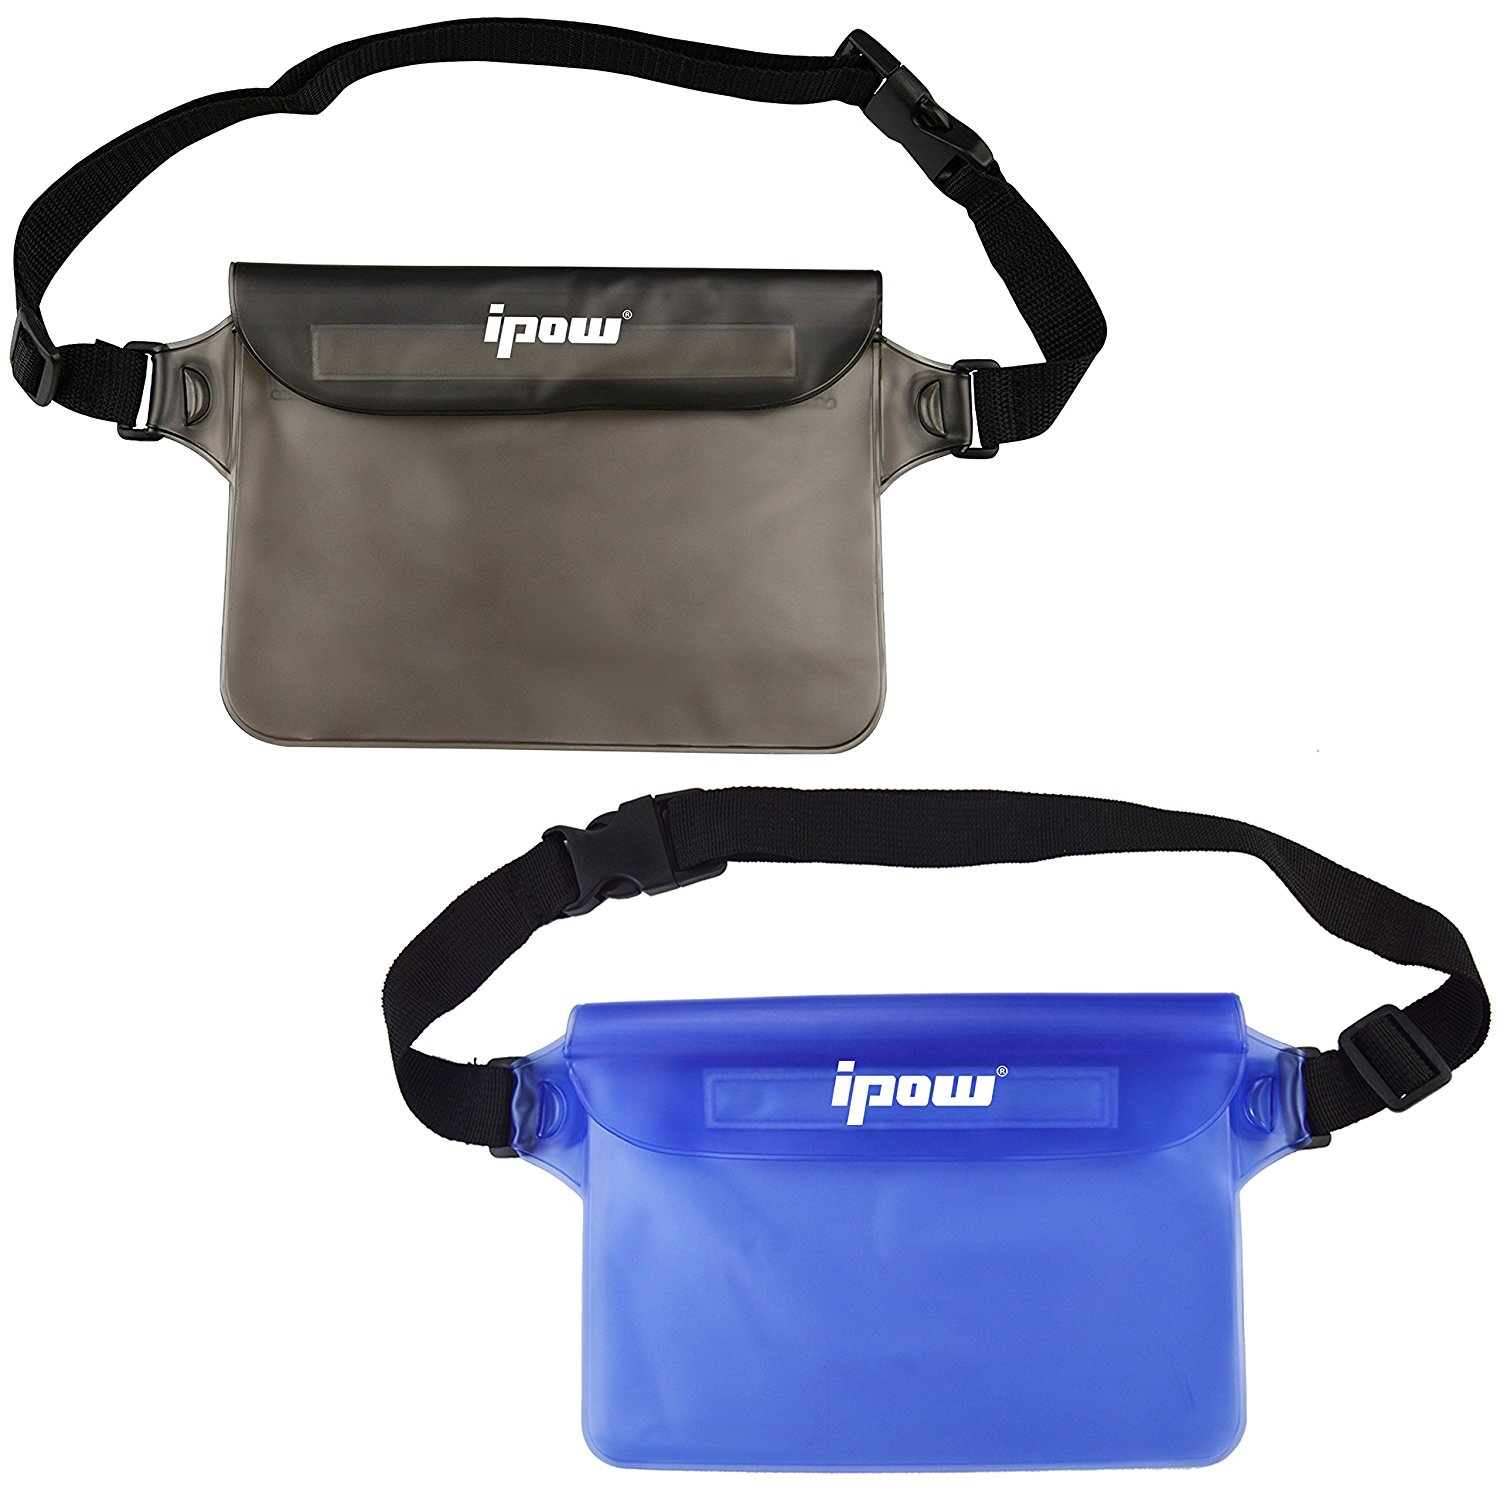 waterproof pouch bag case